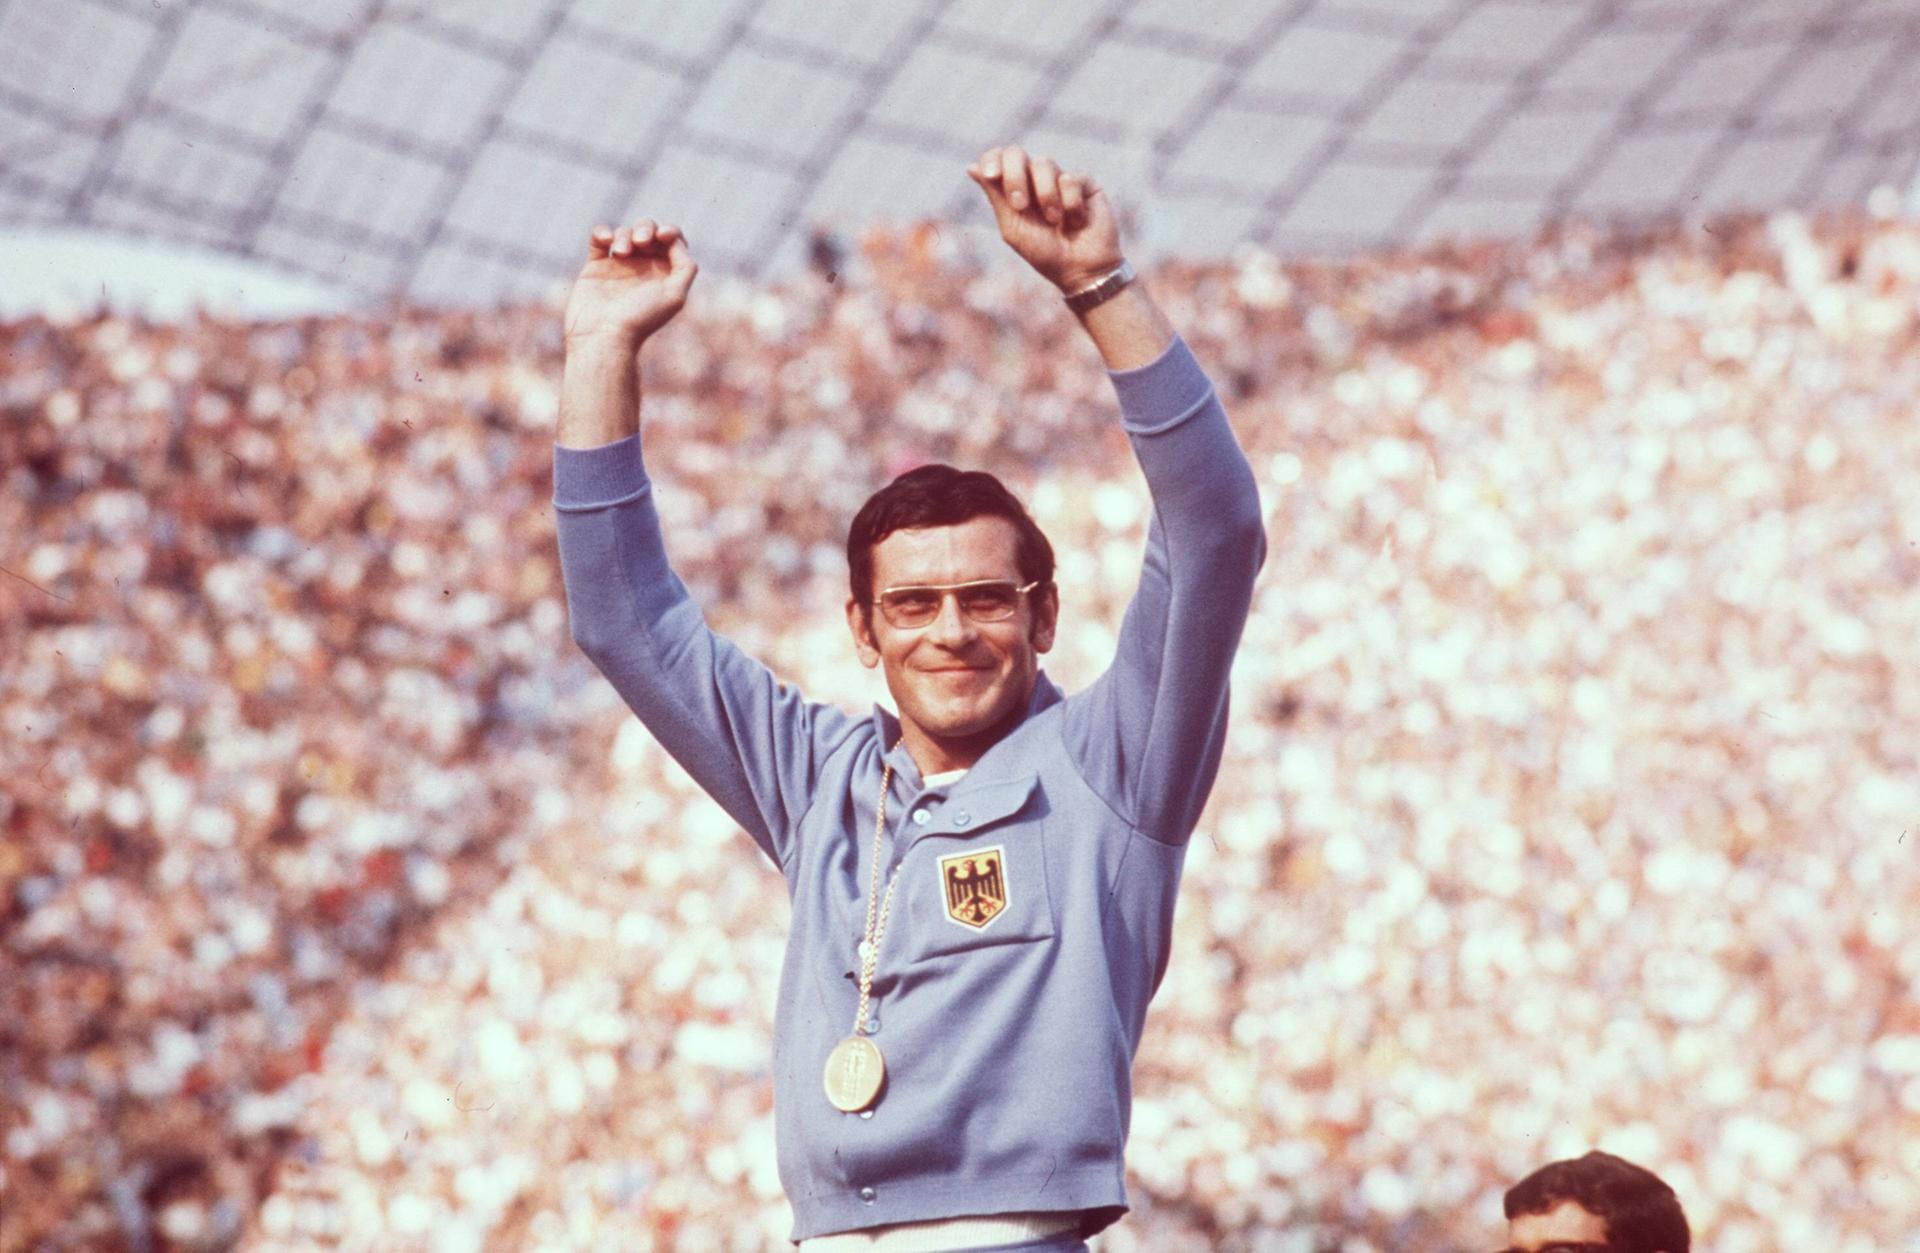 13. Januar: Der deutsche Geher-Olympiasieger der Sommerspiele von München 1972, Bernd Kannenberg, stirb im Alter von 78 Jahren. Der gebürtige Ostpreuße gewann in der bayerischen Metropole überraschend den 50-km-Wettbewerb.